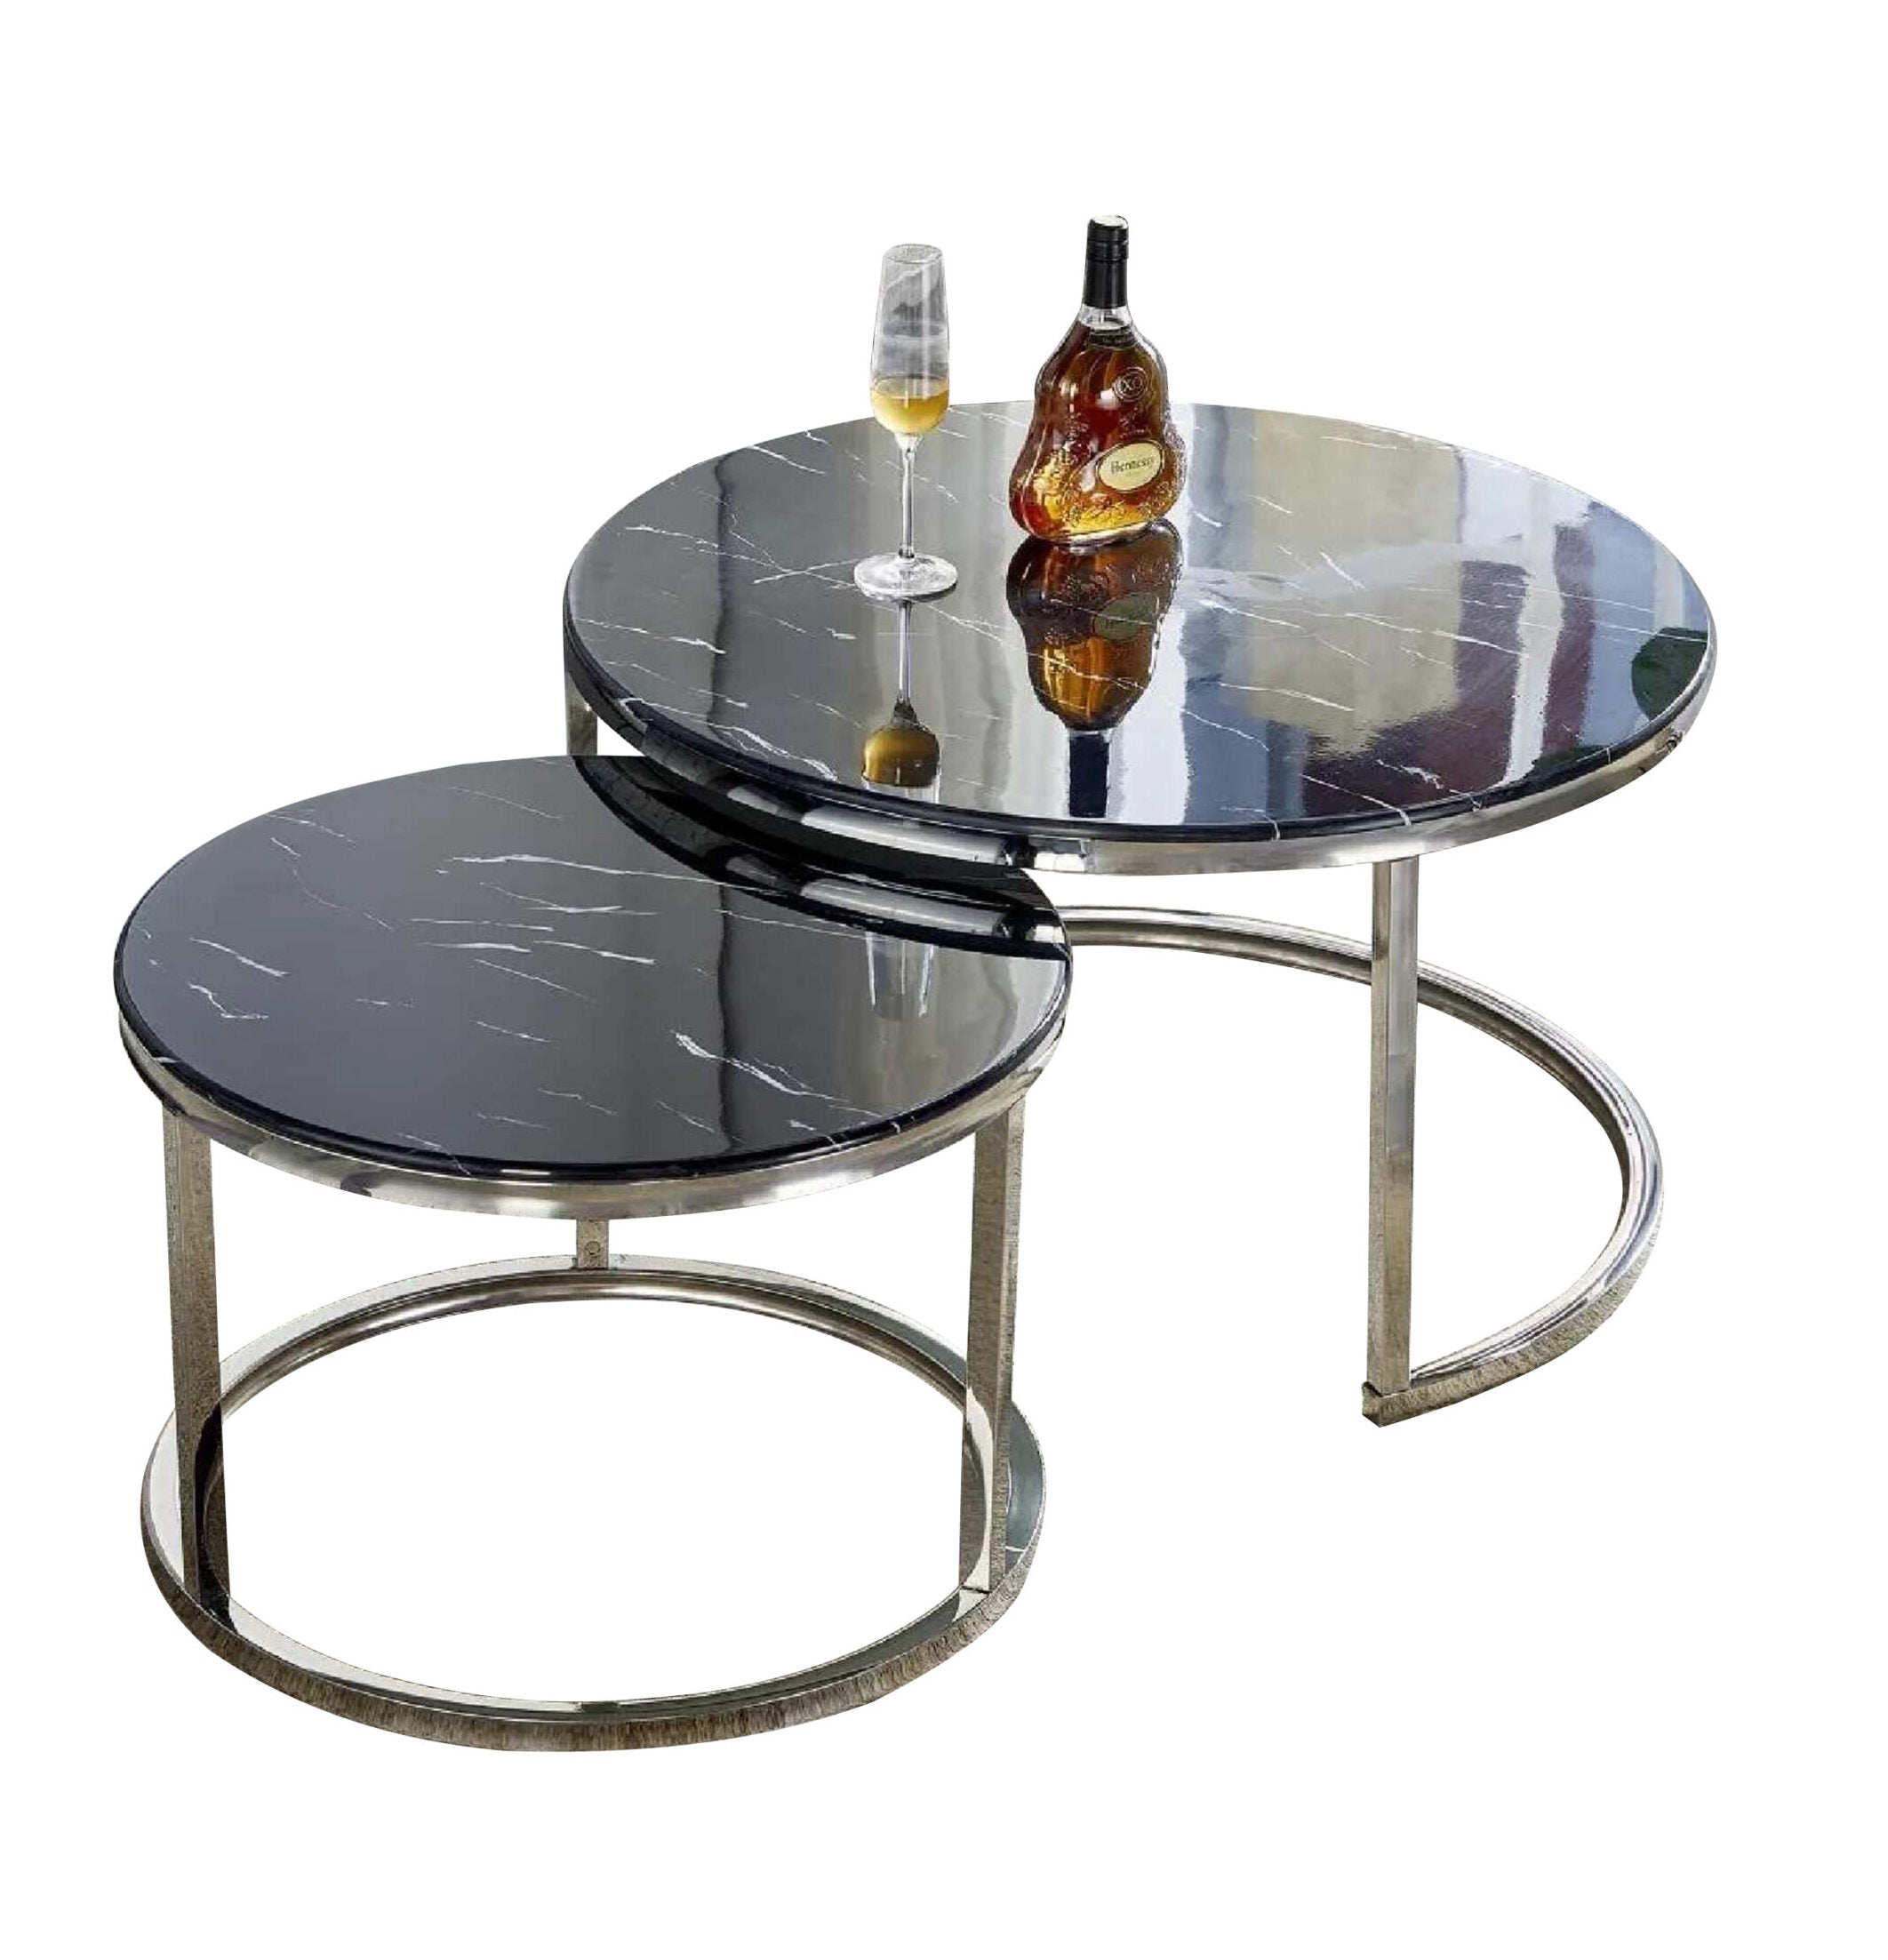 Table Basse GIGOGNE ronde gigogne plateau marbre noir pieds argentée en acier inoxydable